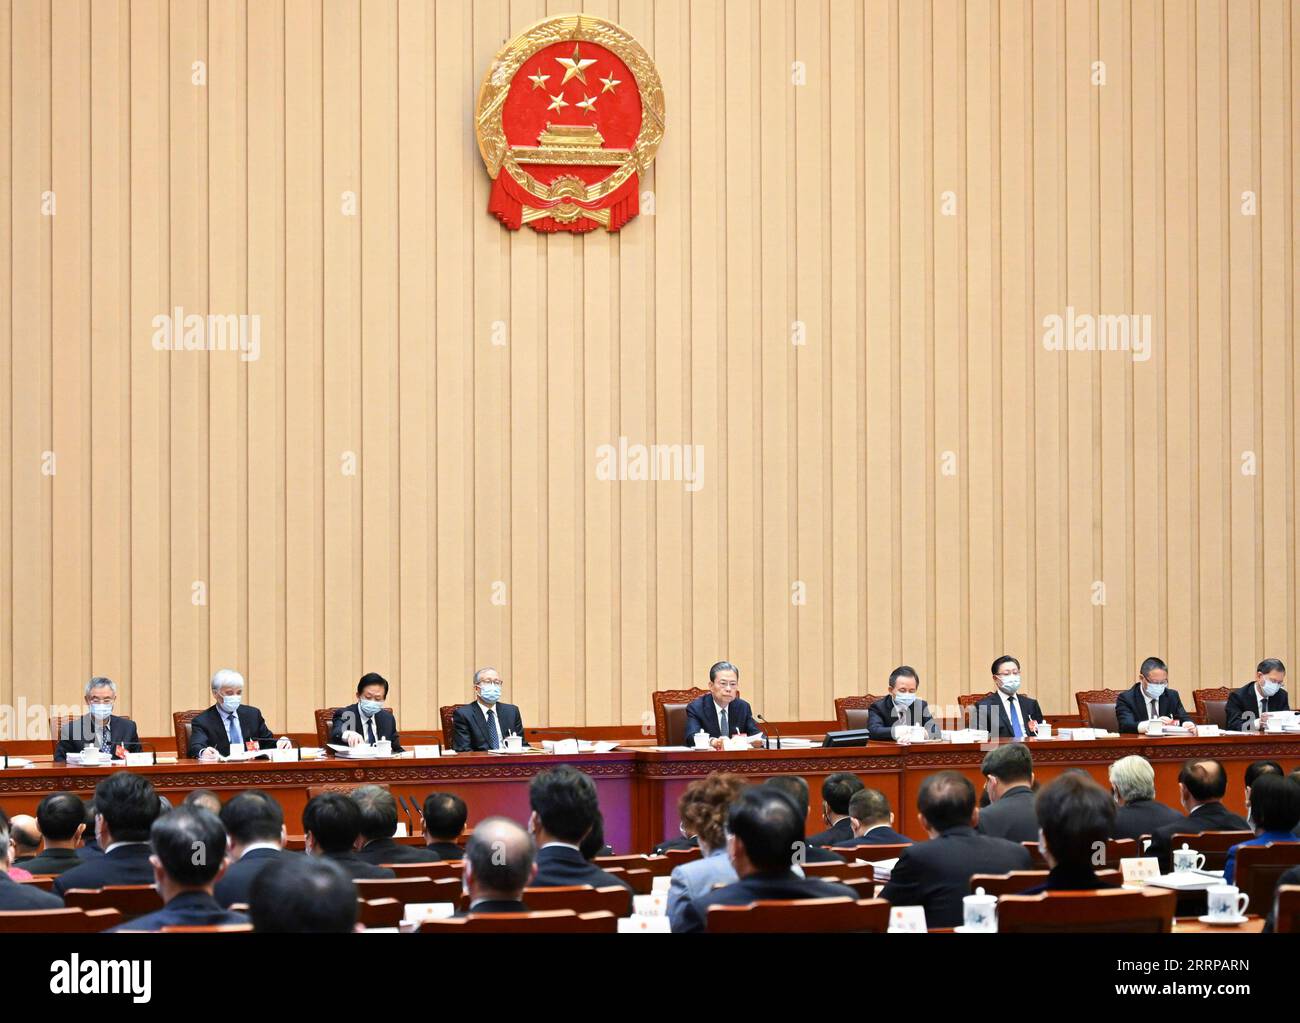 230309 -- PEKING, 9. März 2023 -- Zhao Leji, Vorsitzender des Präsidiums der ersten Sitzung des 14. Nationalen Volkskongresses NPC, leitet die dritte Sitzung des Präsidiums in der Großen Halle des Volkes in Peking, Hauptstadt Chinas, am 9. März 2023. ZWEI SESSIONSCHINA-BEIJING-NPC-PRESIDIUM-MEETING CN XIEXHUANCHI PUBLICATIONXNOTXINXCHN Stockfoto